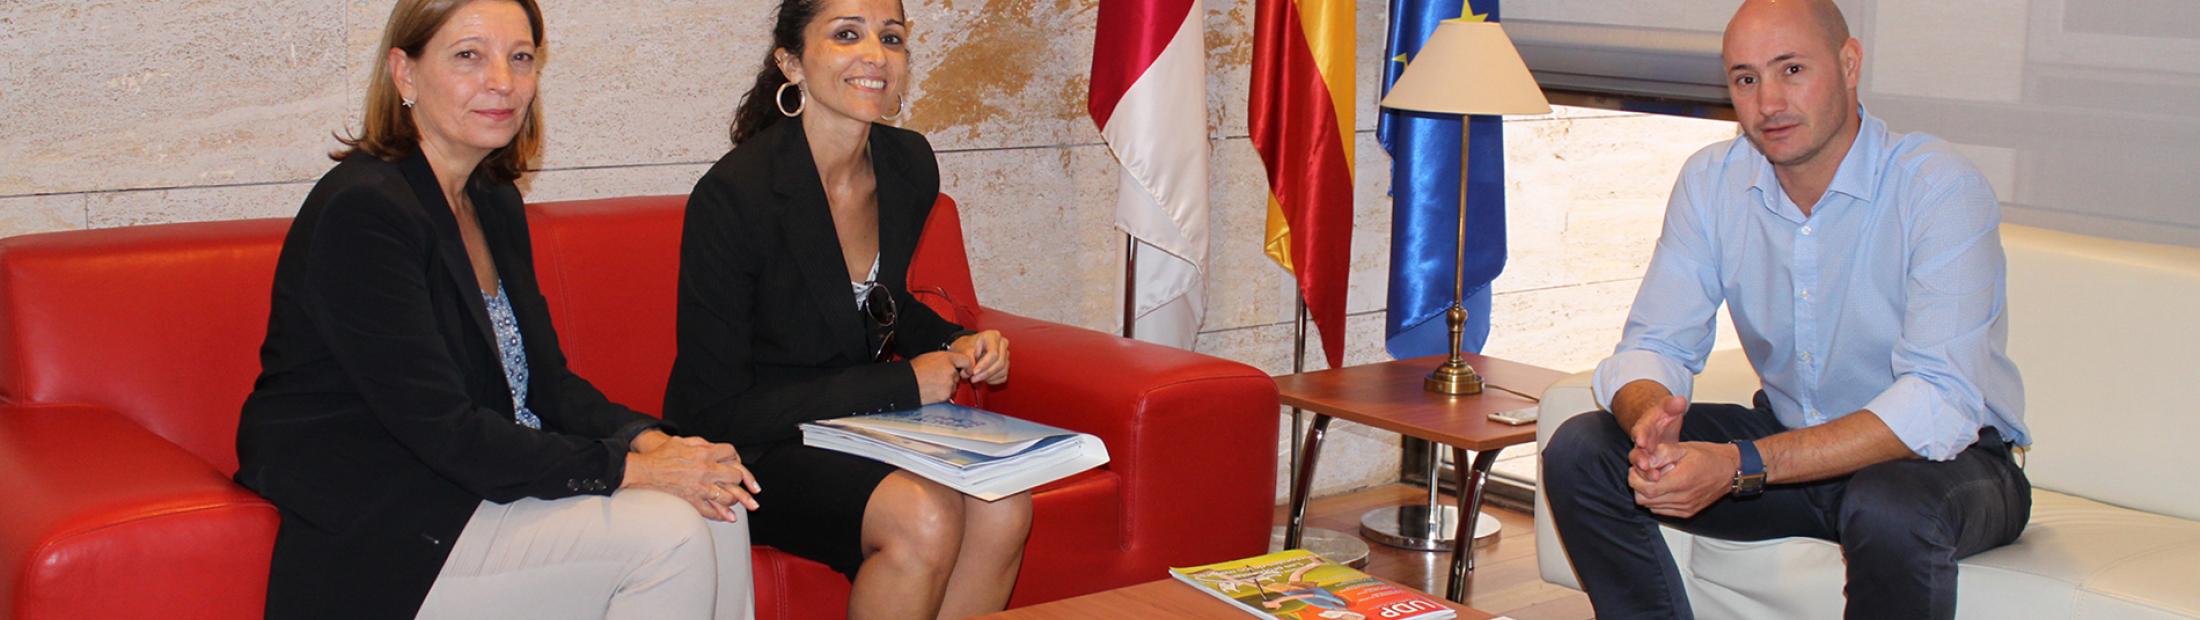 La Junta de Comunidades de Castilla-La Mancha colabora con ACNUR